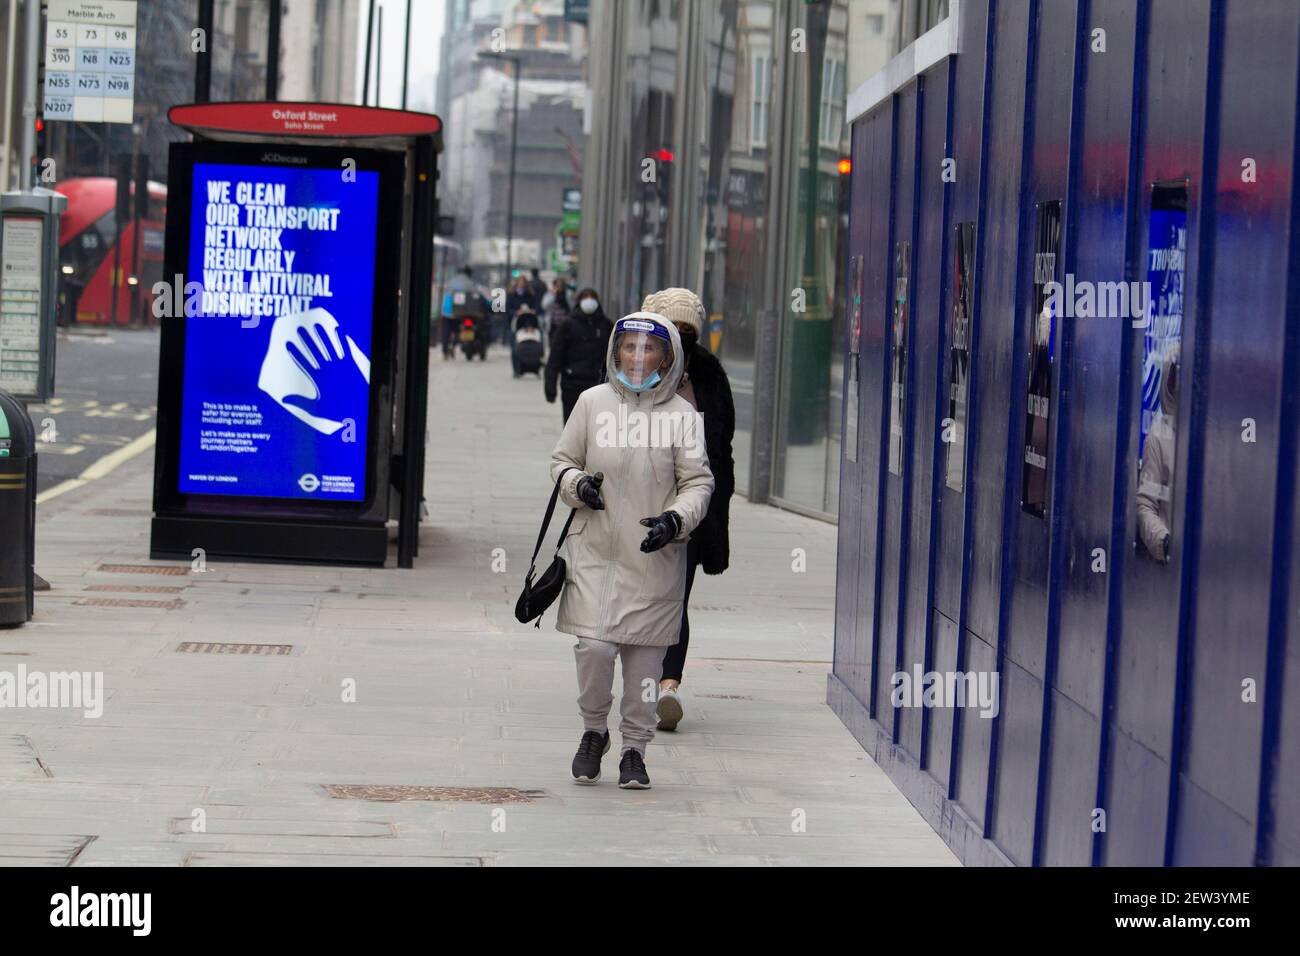 Oxford Street London, pendant le confinement de la pandémie Covid-19 du coronavirus, une femme portant un masque de protection individuelle passe devant l'affiche d'information Covid Banque D'Images